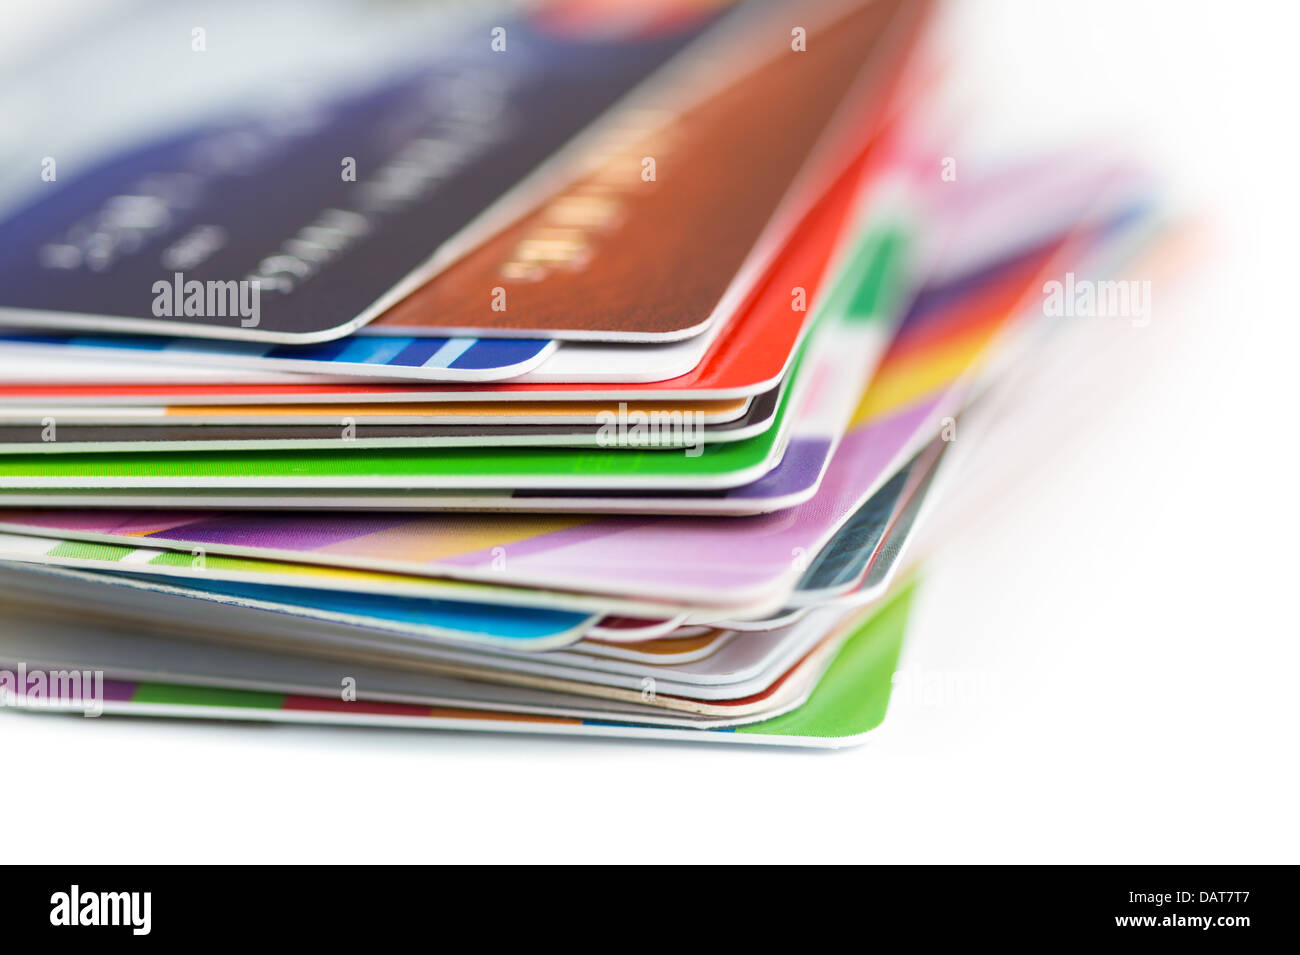 La pile de cartes de crédit close up Banque D'Images